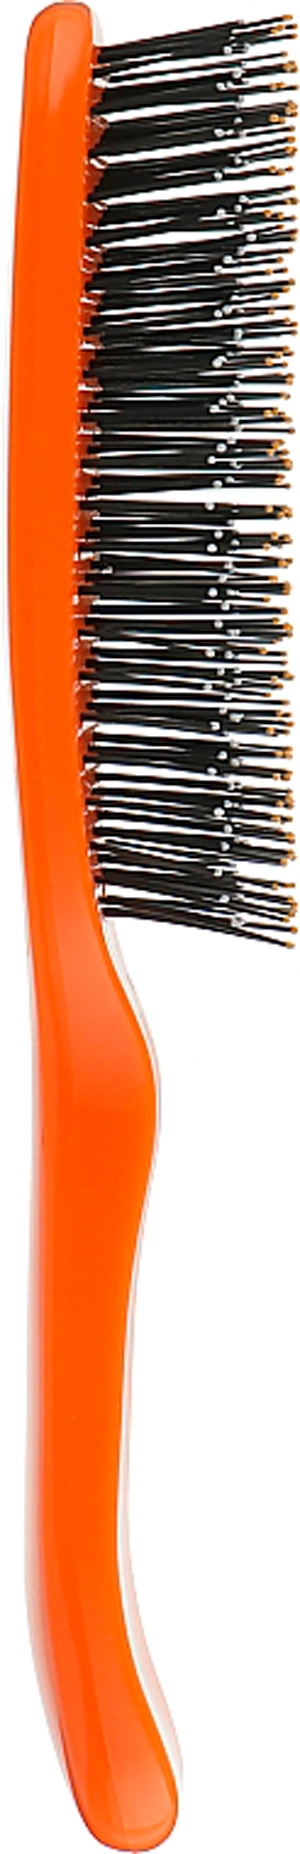 Расческа для волос - I LOVE MY HAIR Spider M, оранжевая глянцевая - фото N2